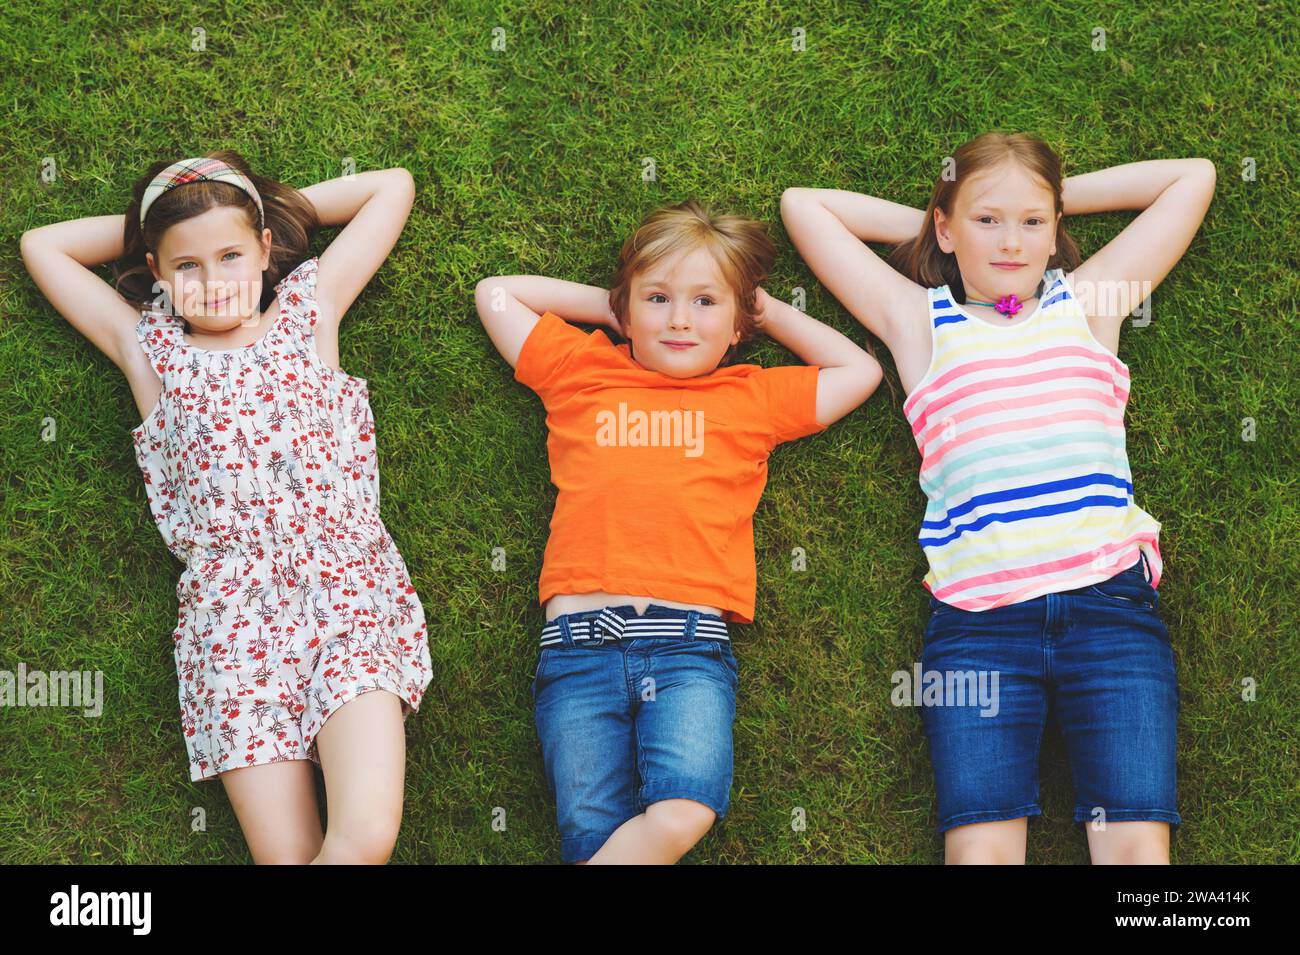 Glückliche Kinder, die sich im Freien amüsieren. Kinder spielen im Sommerpark. Kleiner Junge und zwei Mädchen liegen auf grünem, frischem Gras Stockfoto